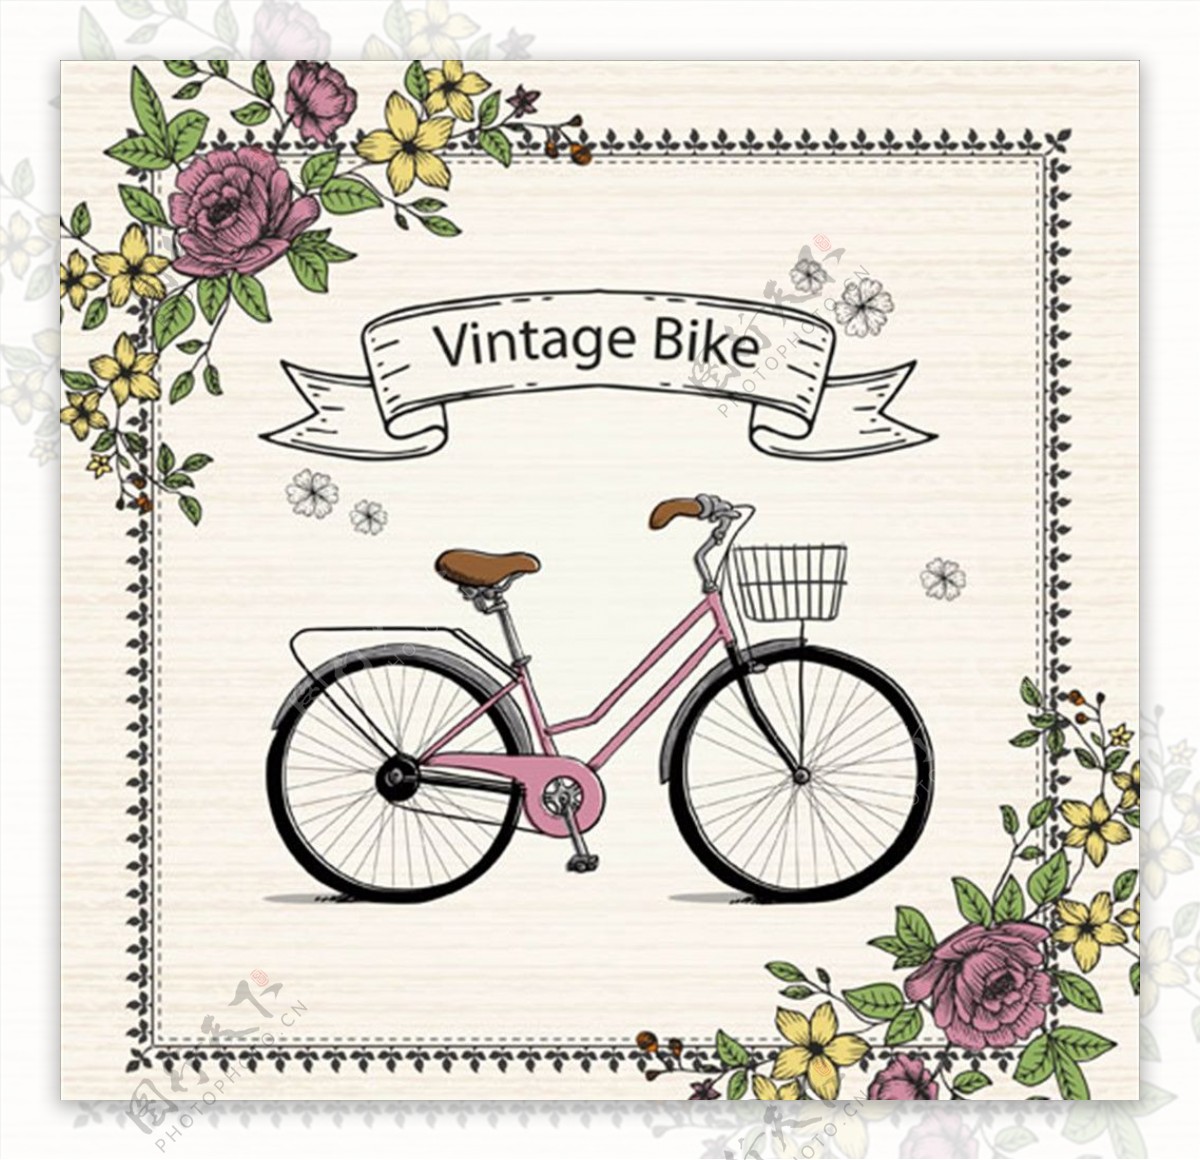 手绘复古花卉自行车插图